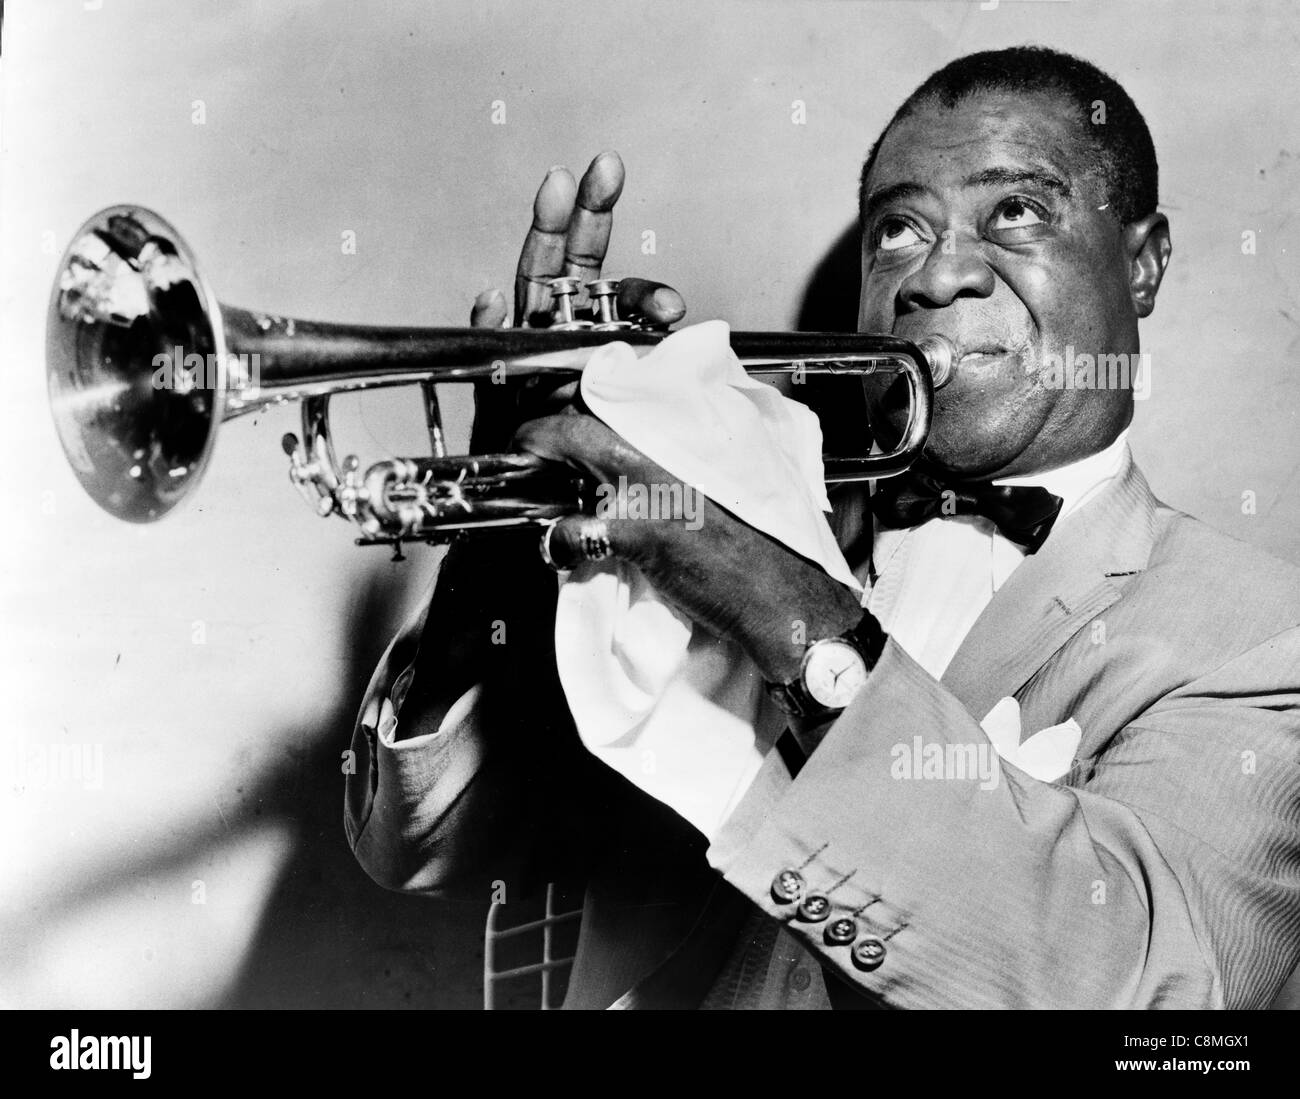 À jouer de la trompette de Louis Armstrong, trompettiste et chanteur de jazz américain de la Nouvelle Orléans Banque D'Images